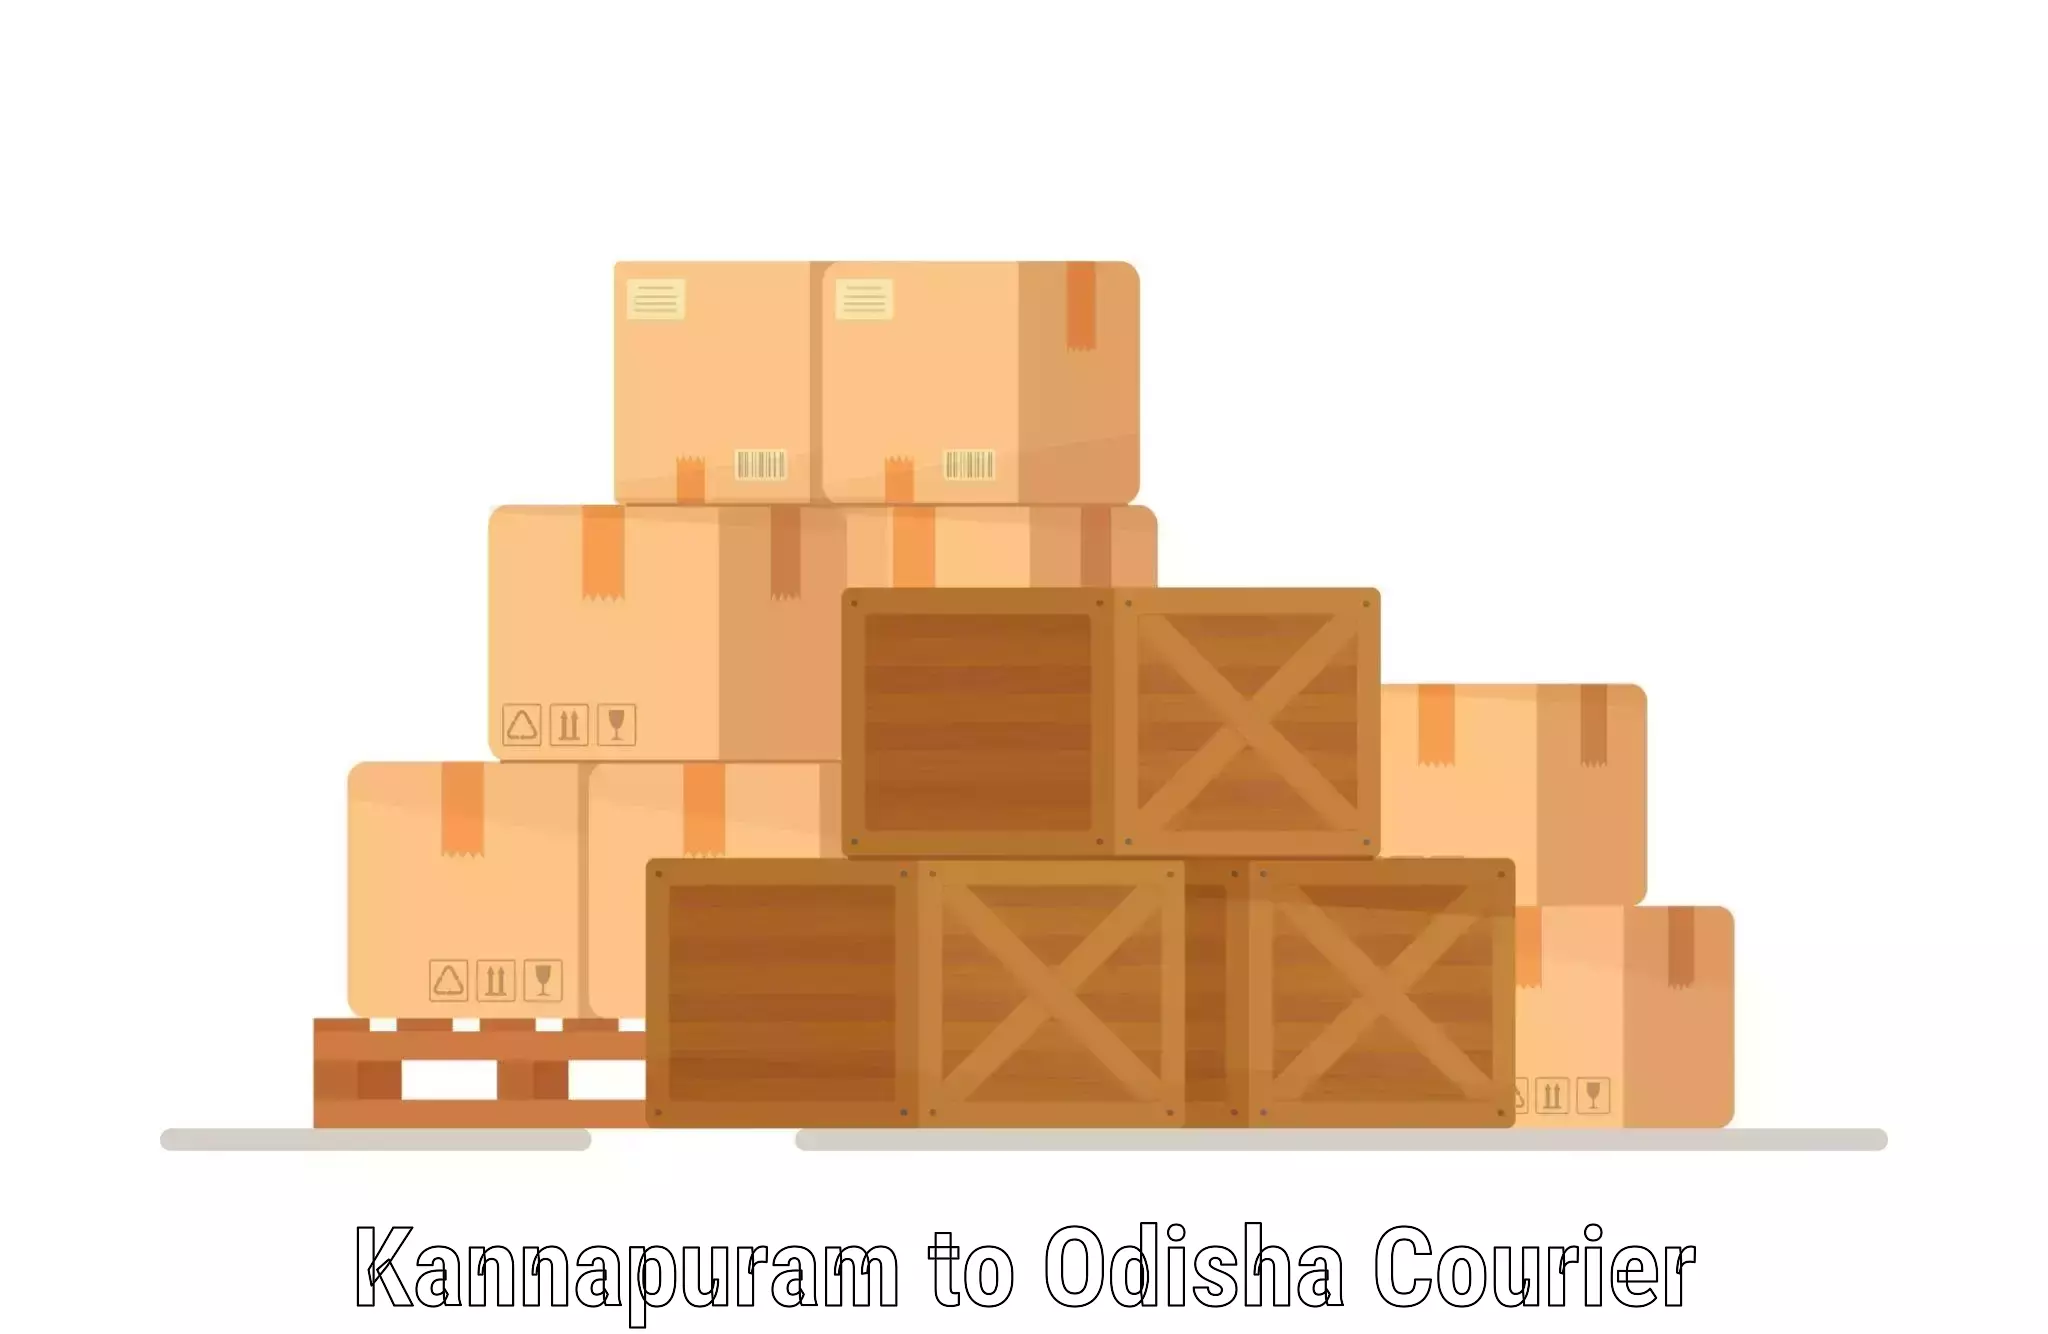 Efficient parcel transport Kannapuram to Kalimela